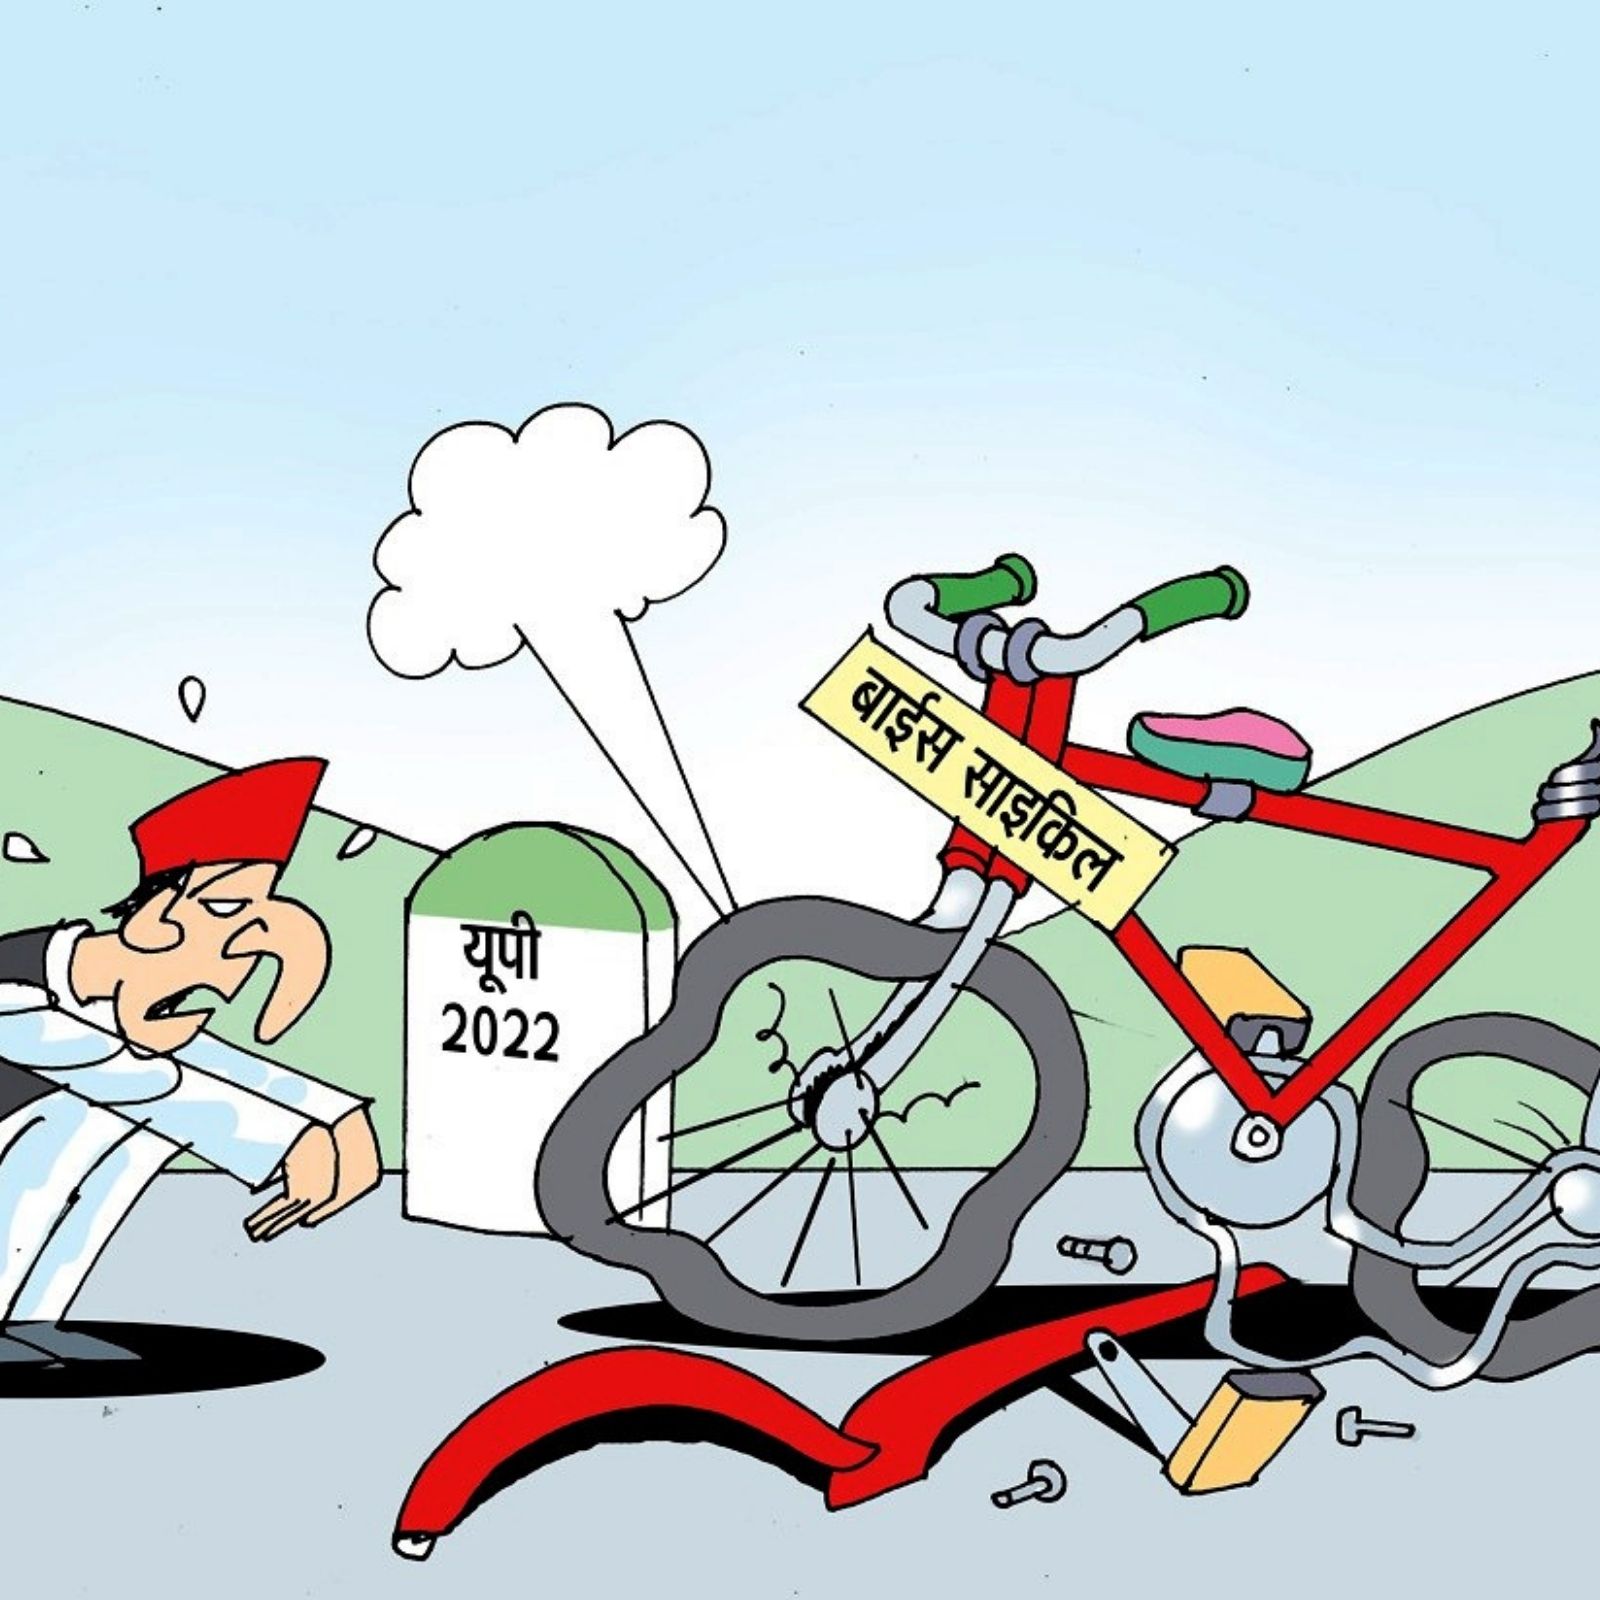 UP Election 2022: कार्टून के जरिए BJP का अखिलेश पर तंज, बाइस नहीं मिलेंगी  बबुआ! न यकीन हो तो 'बुआ' से पूछ लो - bjp attack akhilesh yadav with  cartoons message before